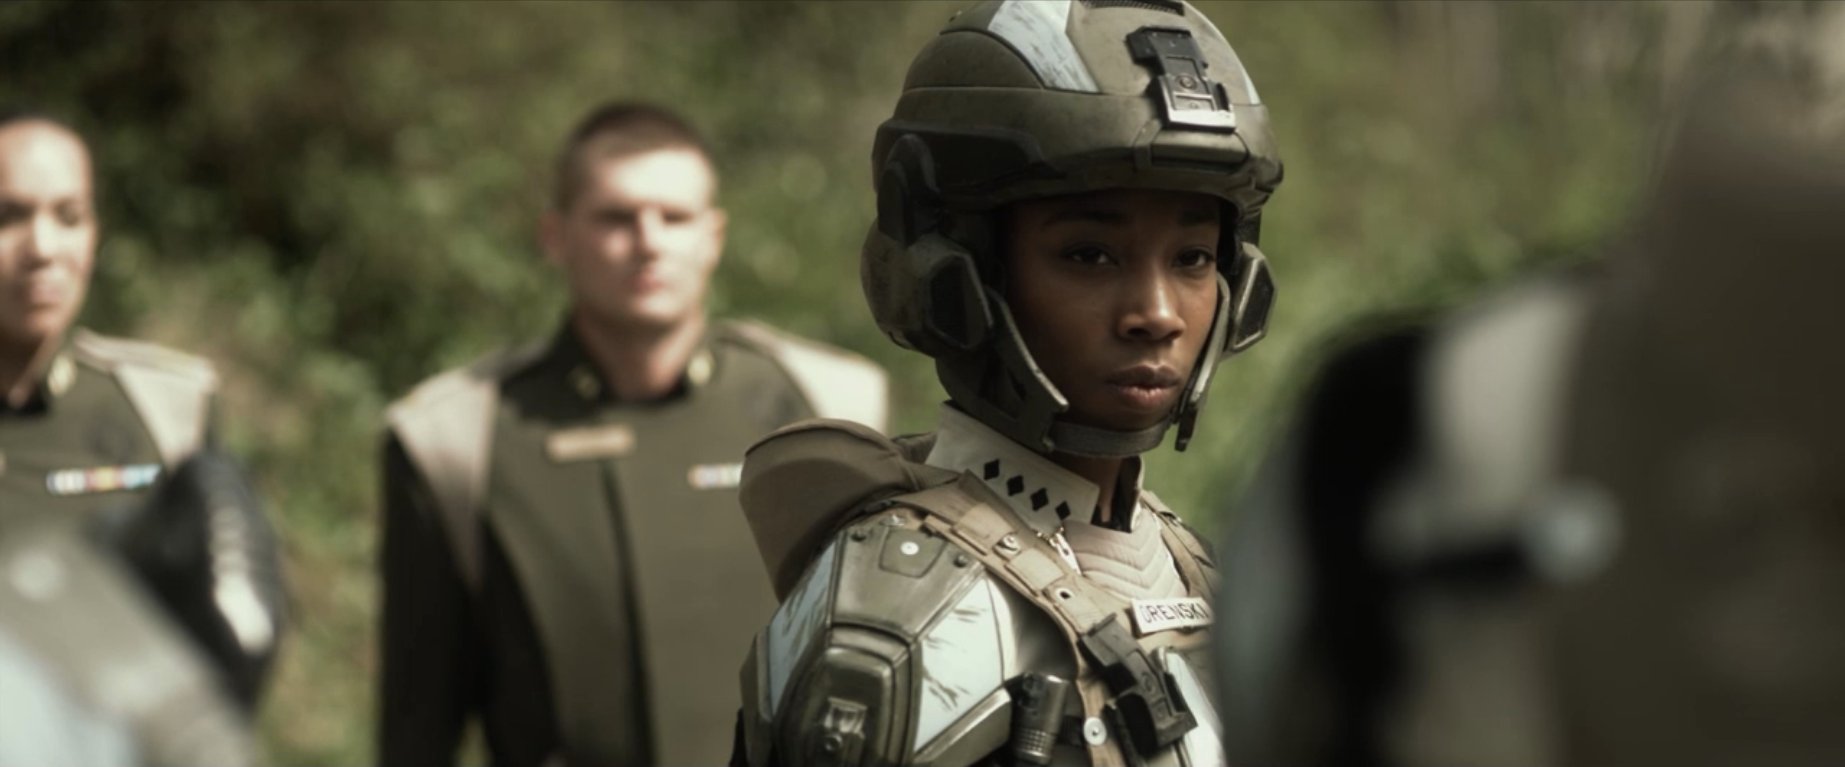 Enisha Brewster as April Orenski in Halo 4: Forward Unto Dawn